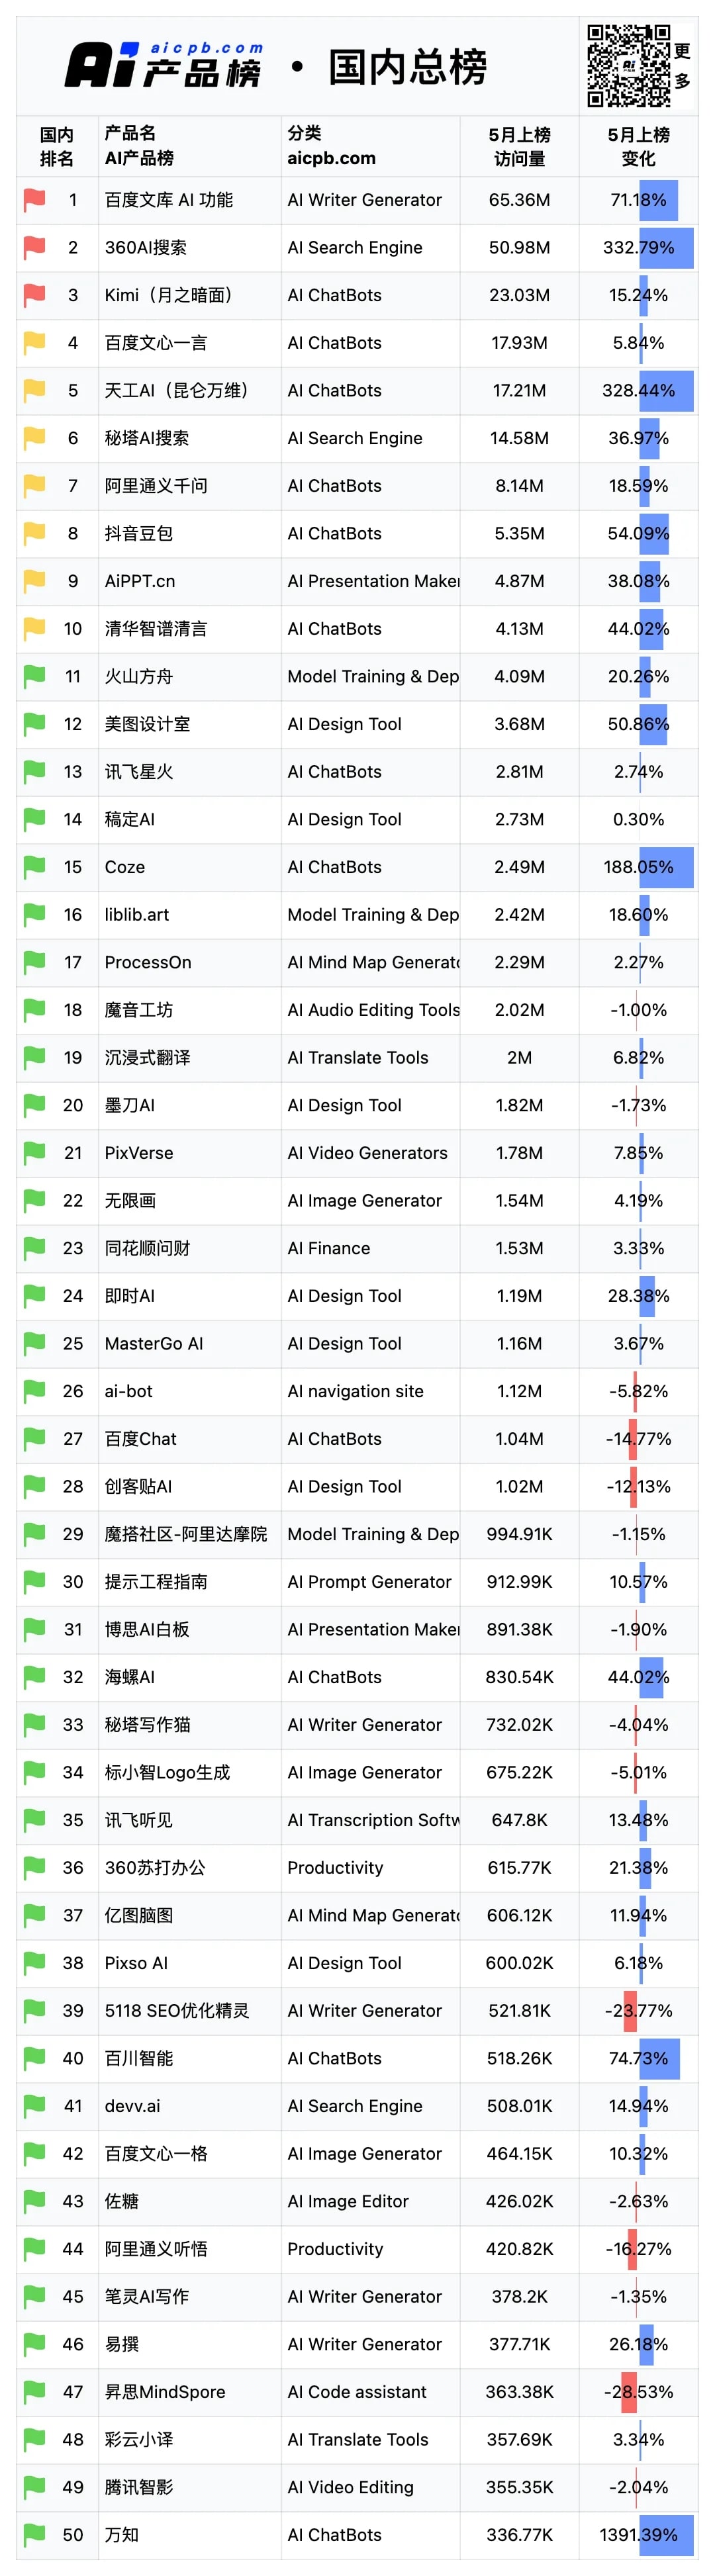 5月份AI产品榜-国内总榜数据